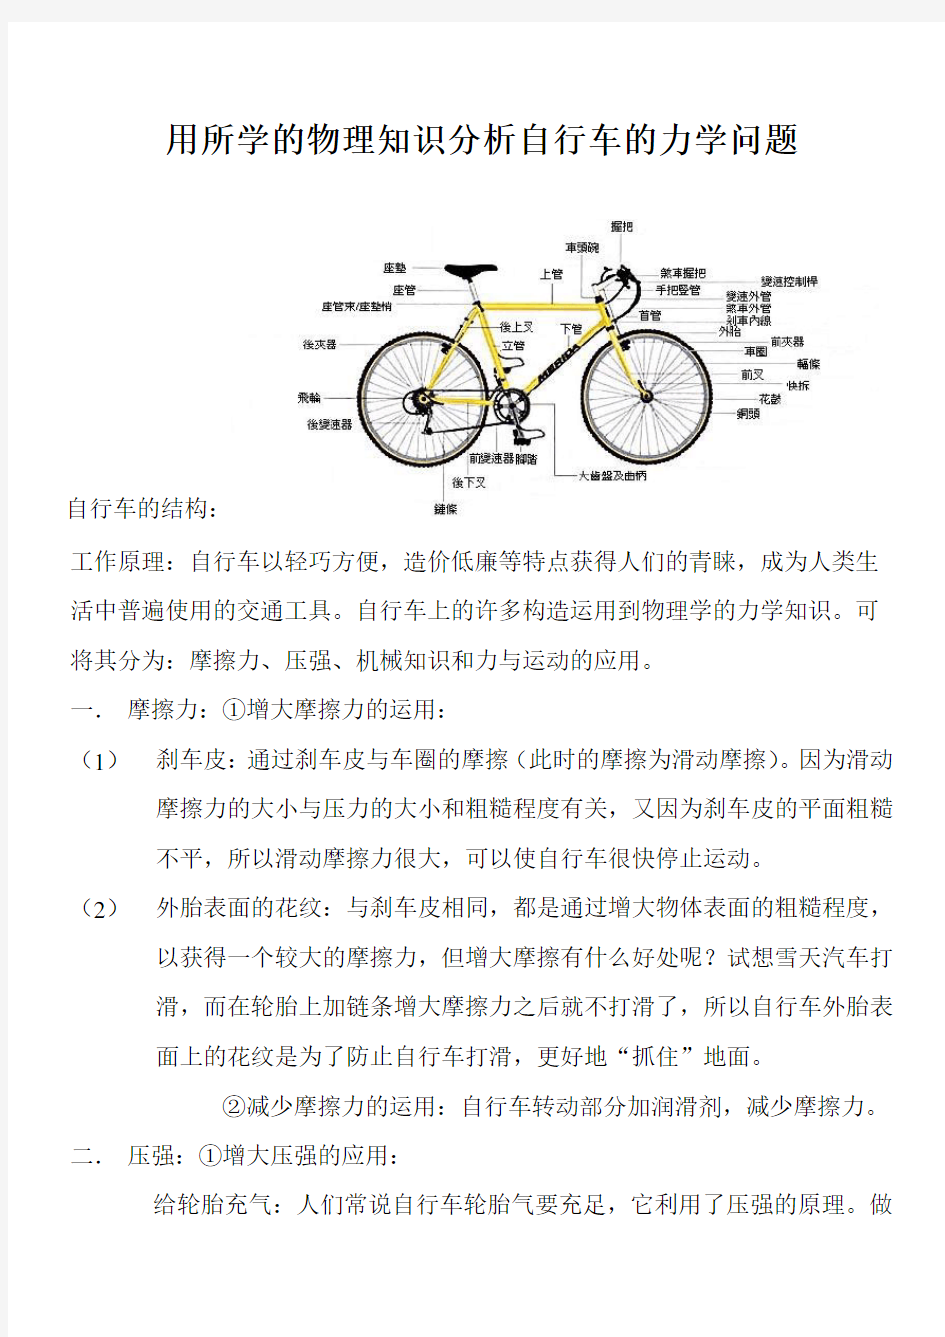 用所学的物理知识分析自行车的力学问题